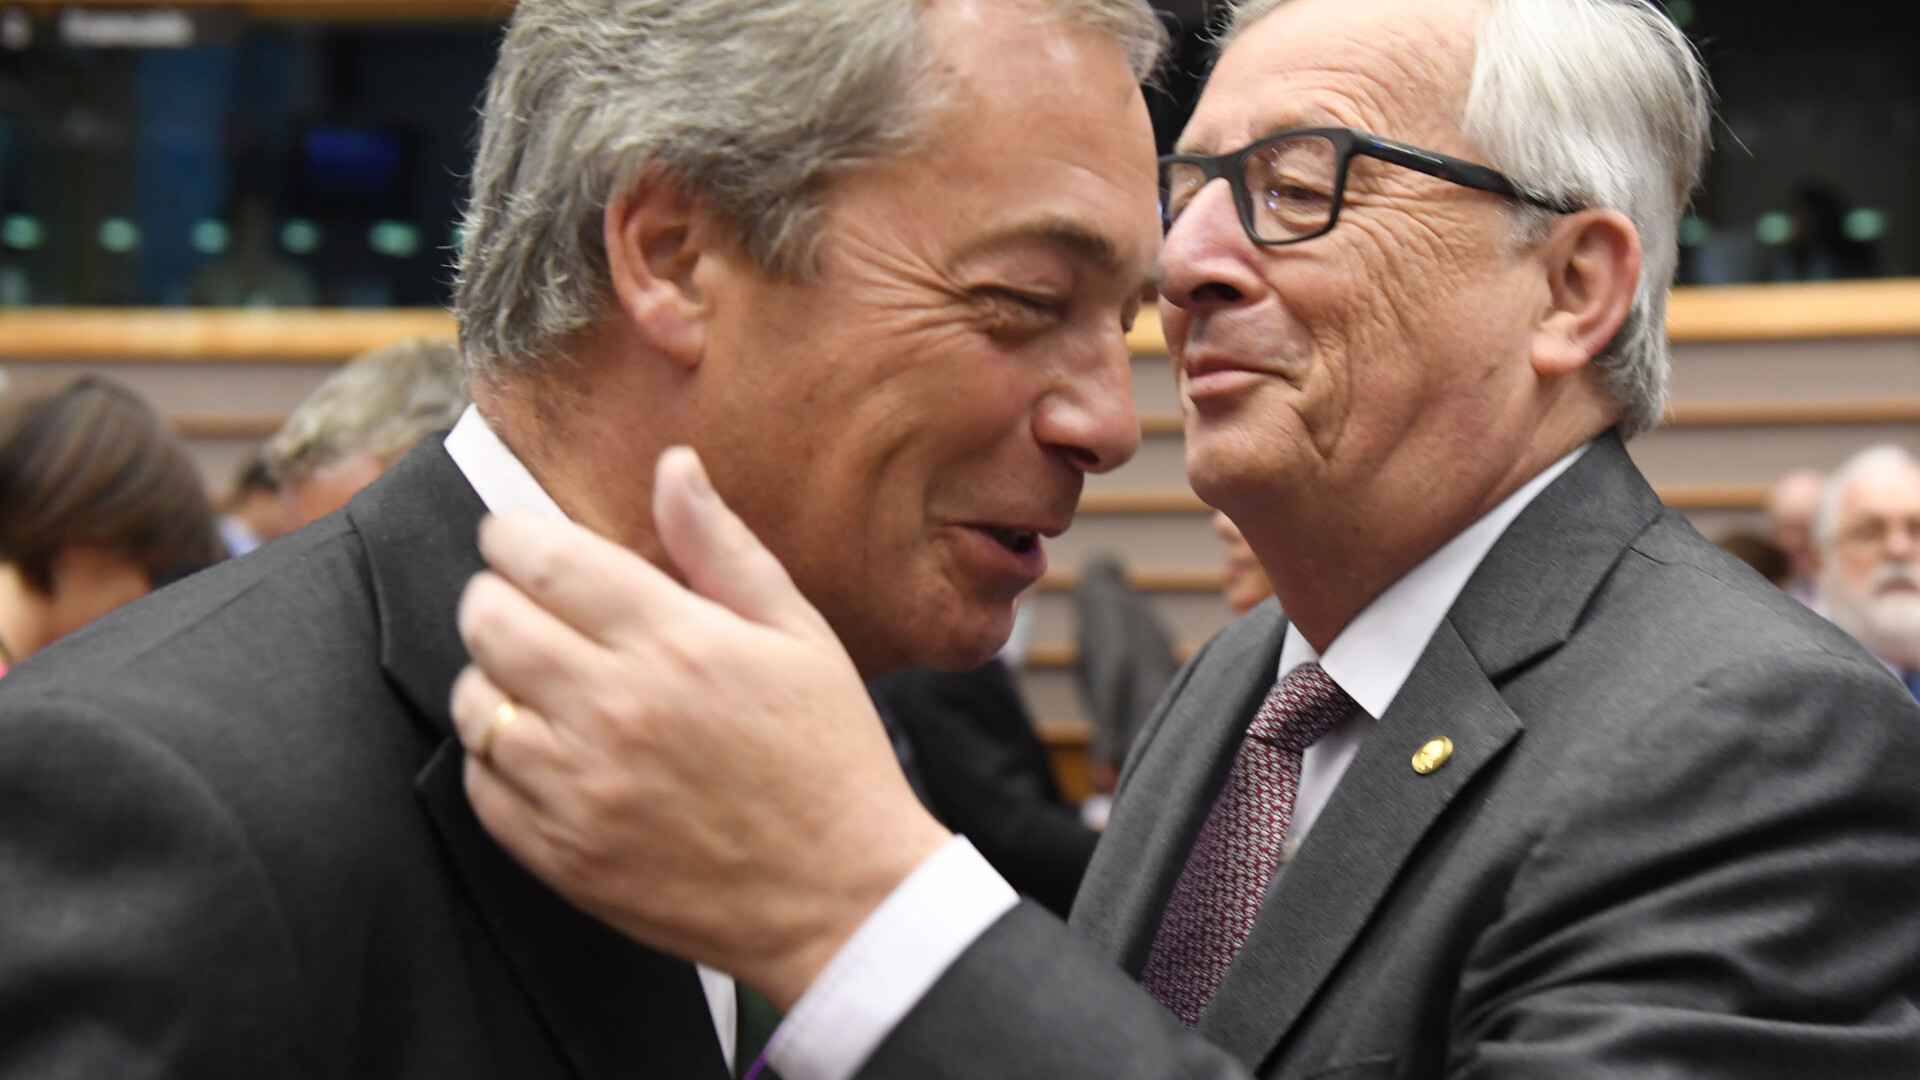 Juncker si Nigel Farage in parlamentul european